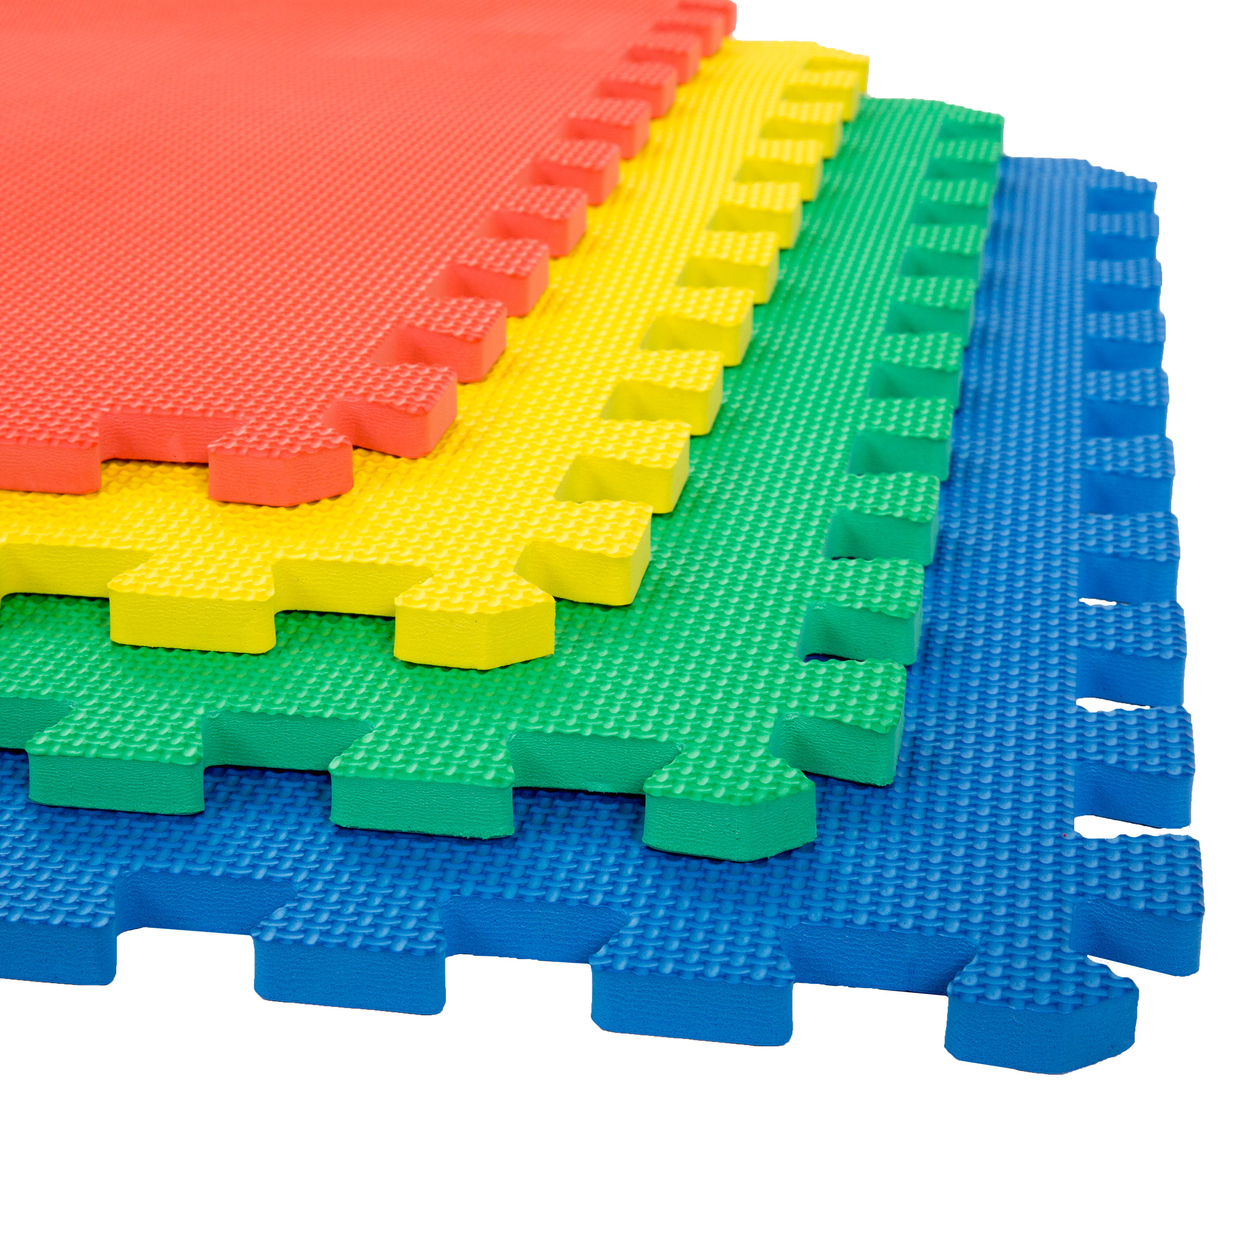 Stalwart Exercise Foam Flooring - 4 Pc - 2' X 2' Tiles 16 Square Feet Yoga